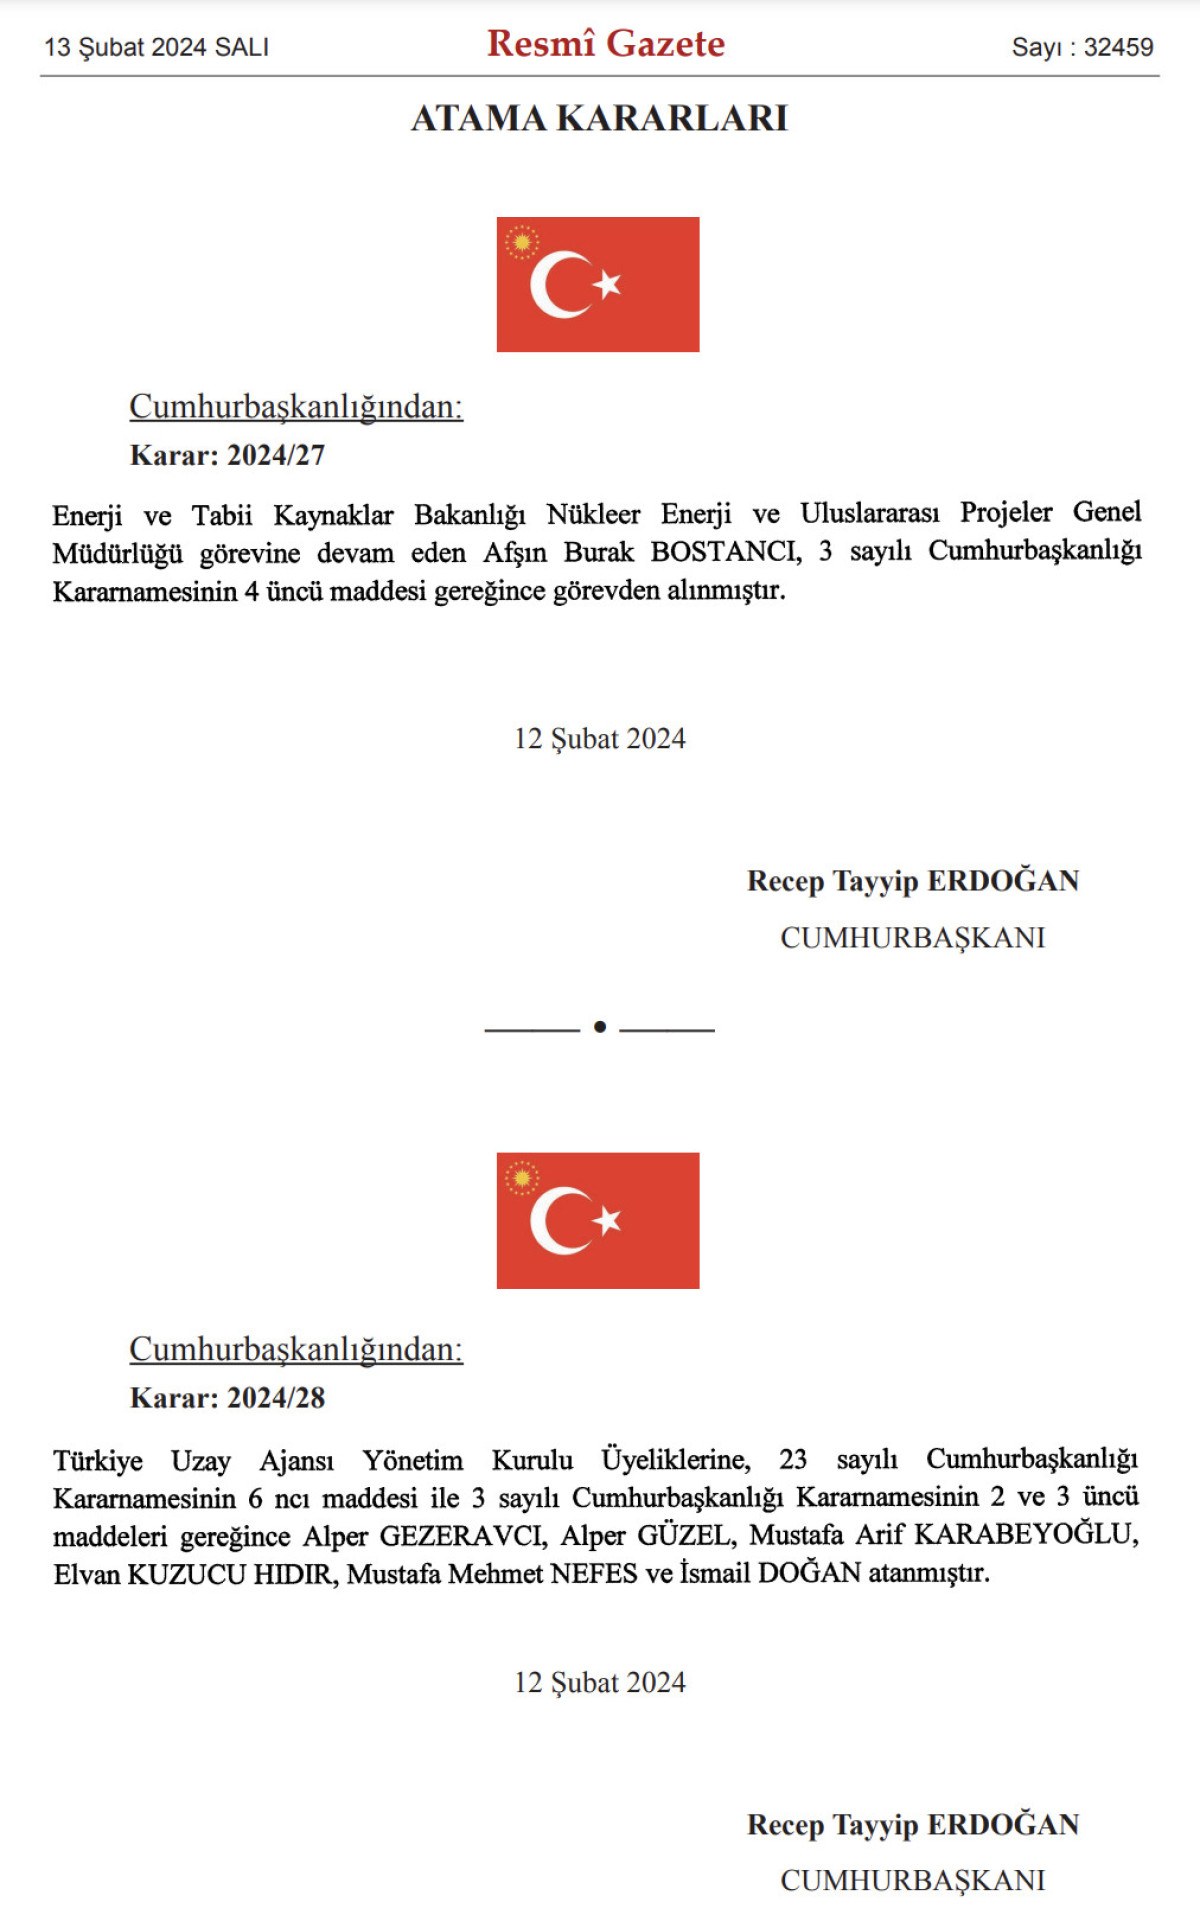 Türkiye Uzay Ajansı Yönetim Kurulu Üyelikleri